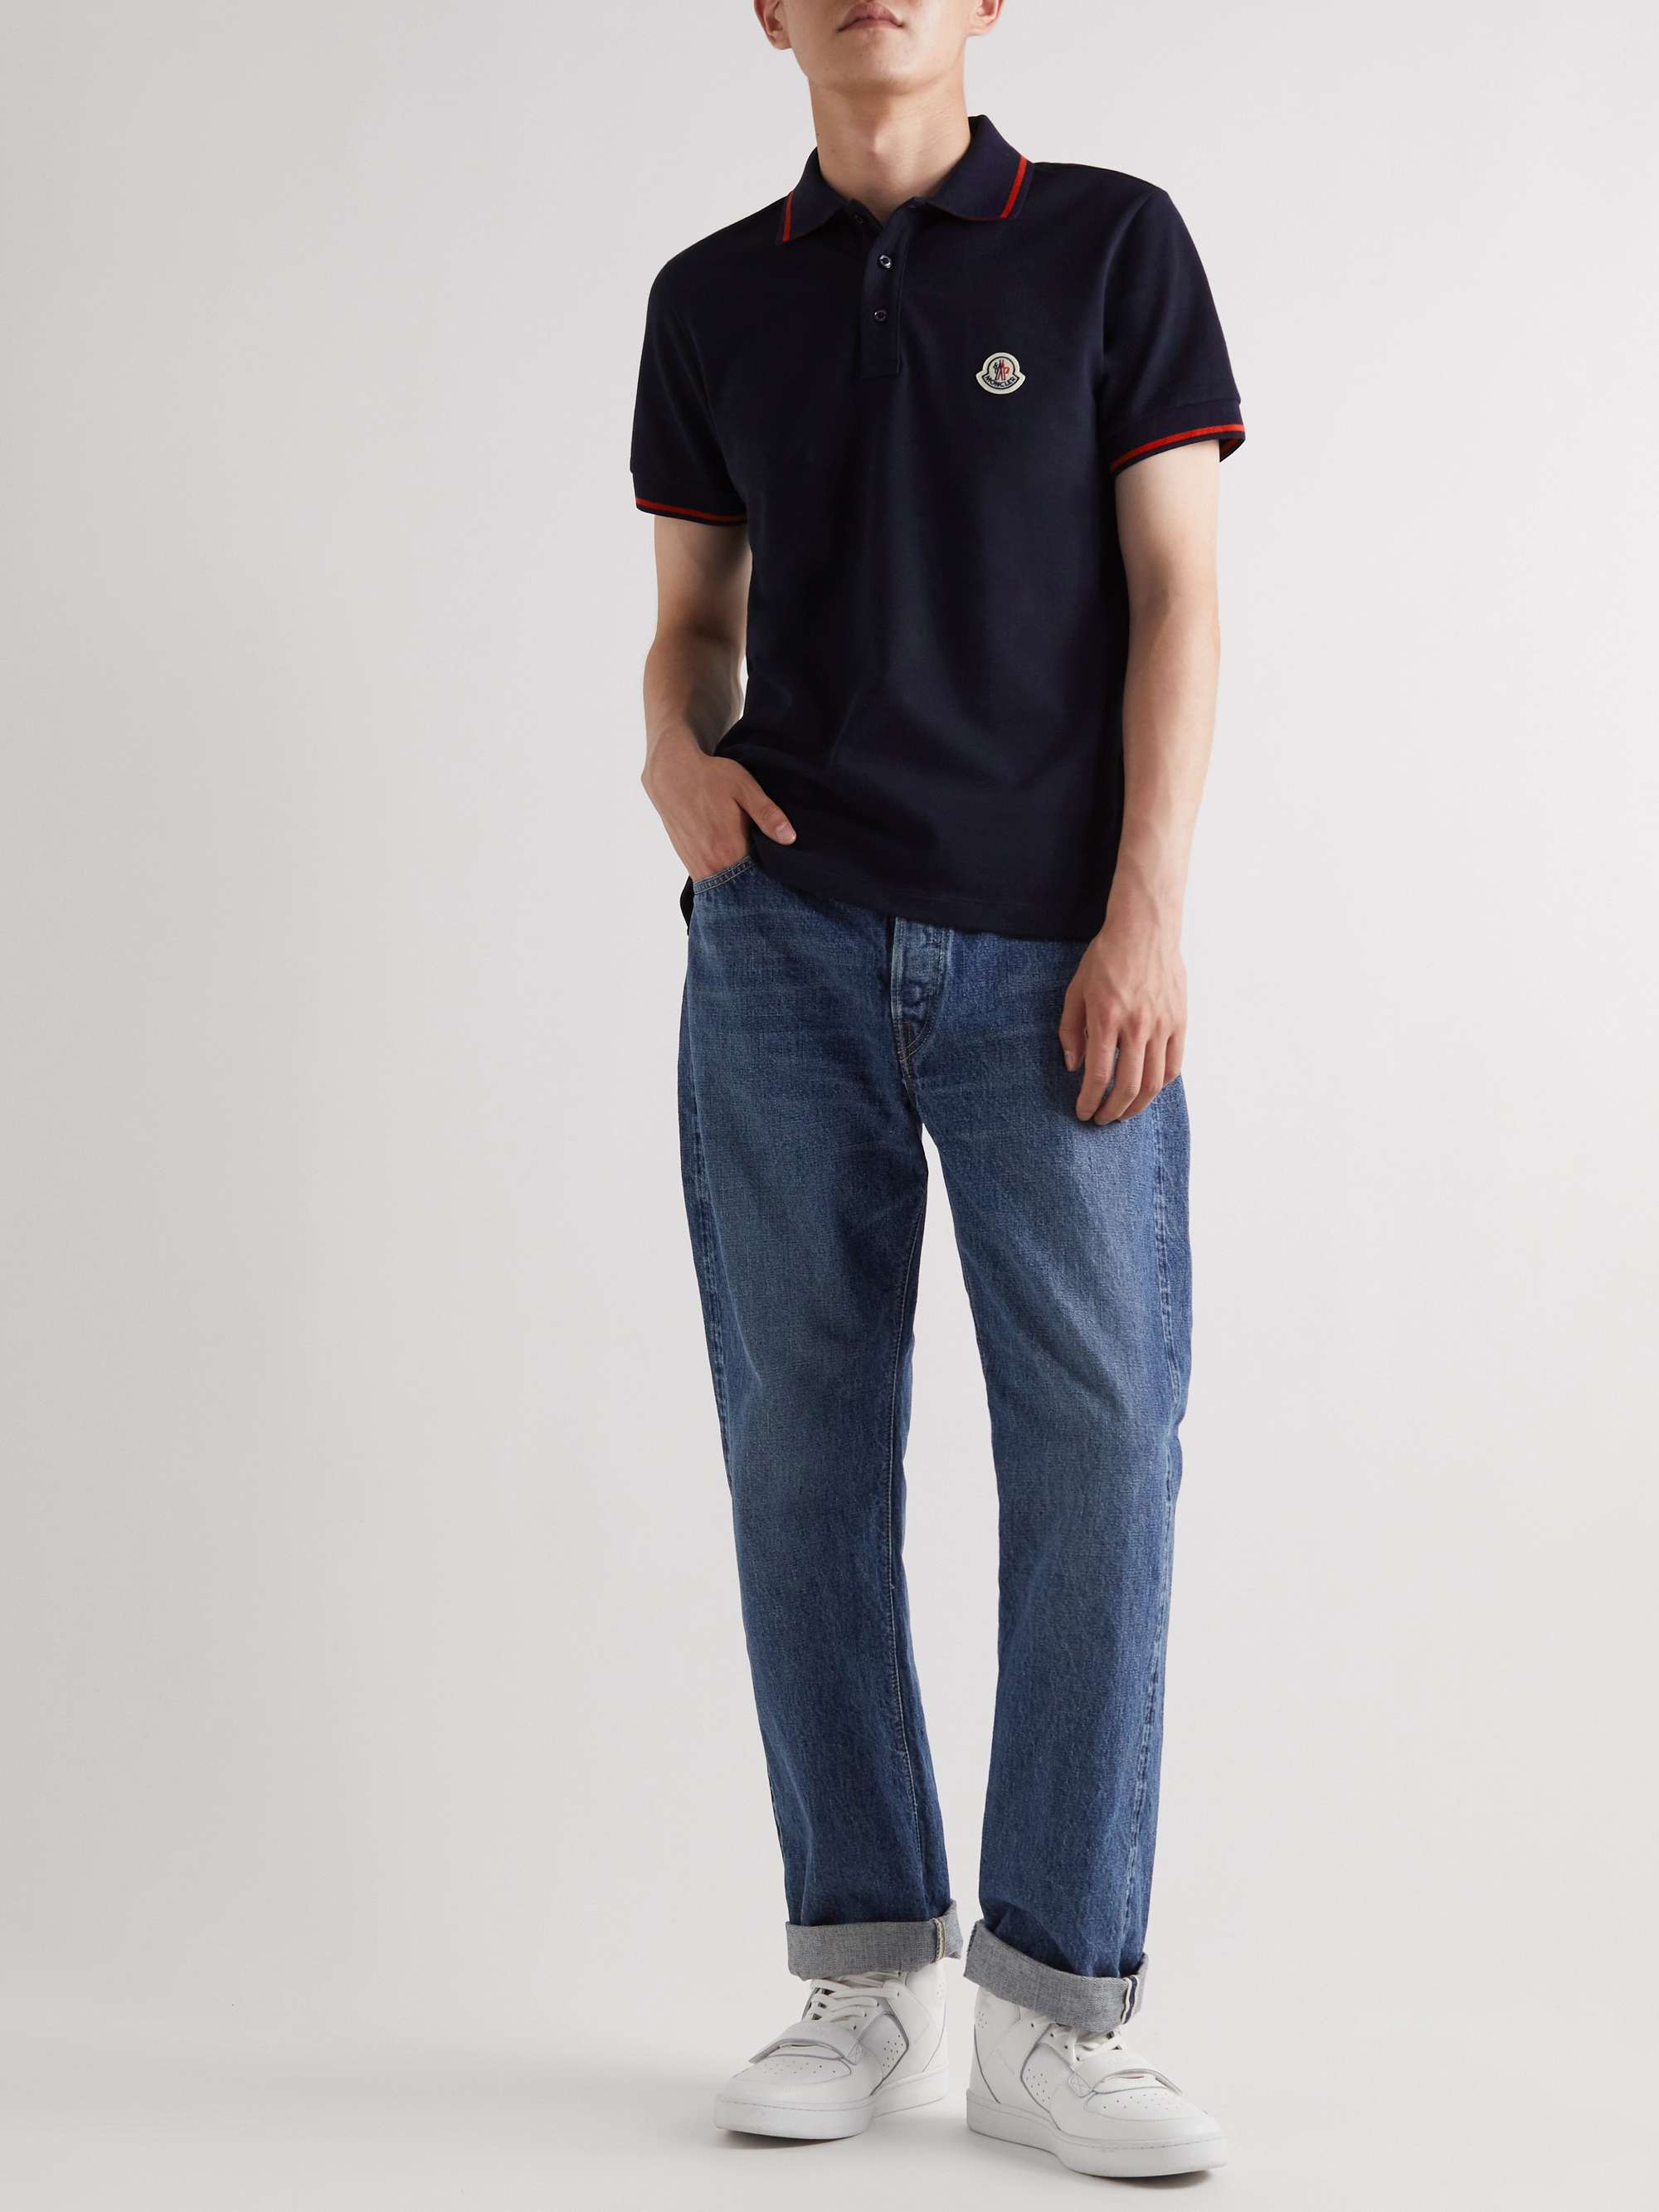 MONCLER Logo-Appliquéd Cotton-Piqué Polo Shirt for Men | MR PORTER